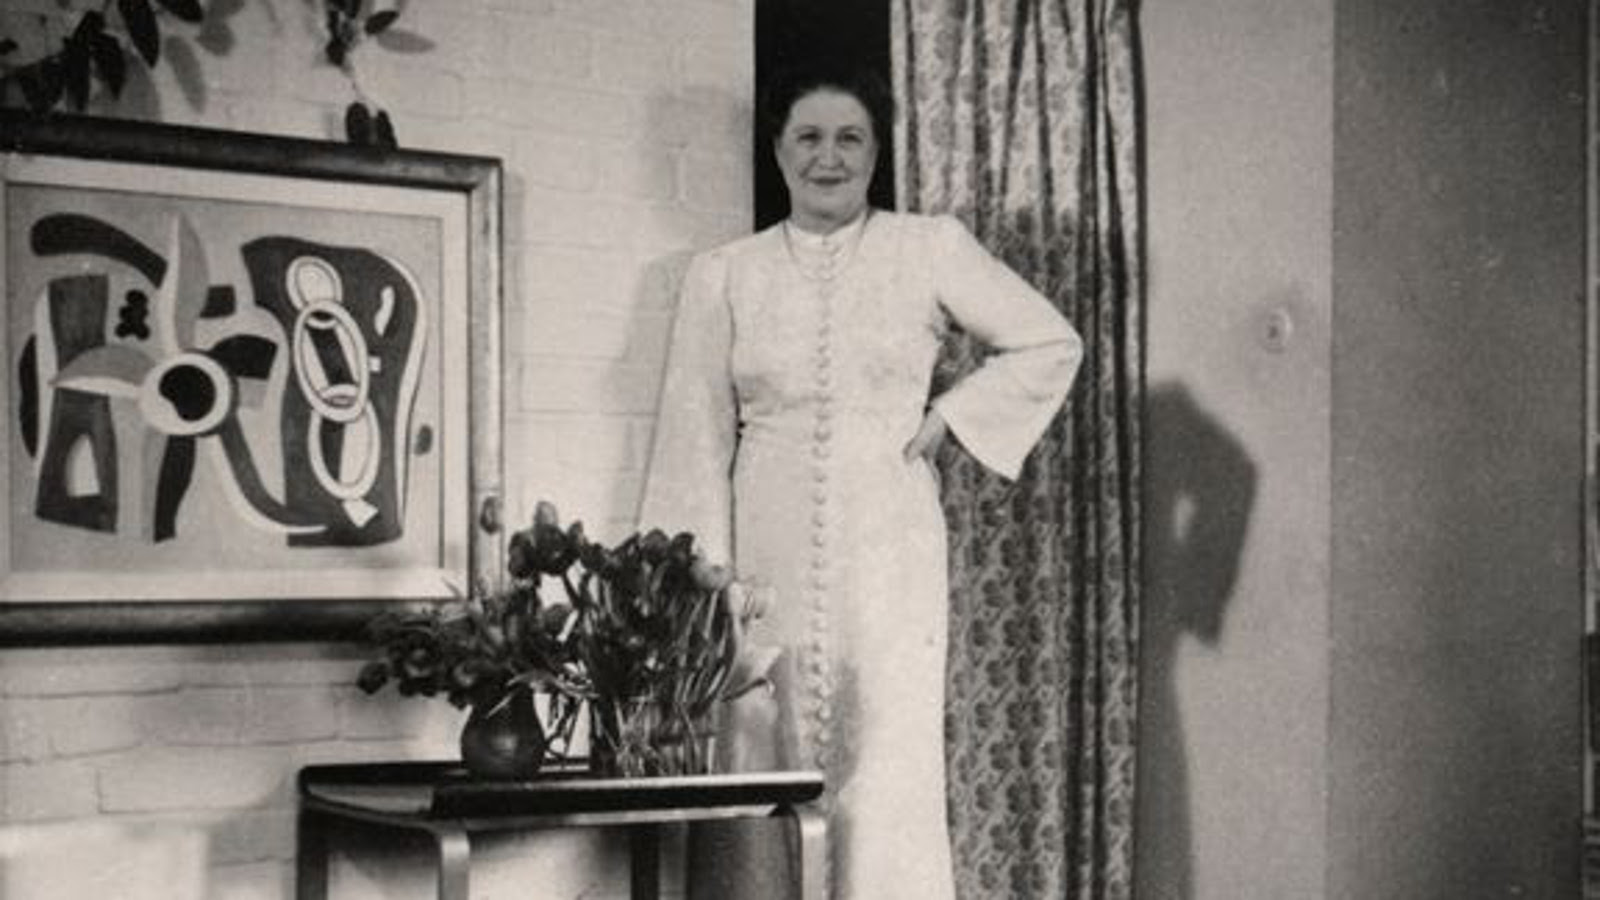 Kuvassa on Aino Aalto seisomamassa valkoisessa pitkässä, kangasnapitetussa puvussa. Vieressä on valkoista tiiliseinää ja siinä on abstrakti maalaus ja sen alla matala pöytä siinä on kaksi tulppaaniasetelmaa. Kuva on musta-valkoinen.